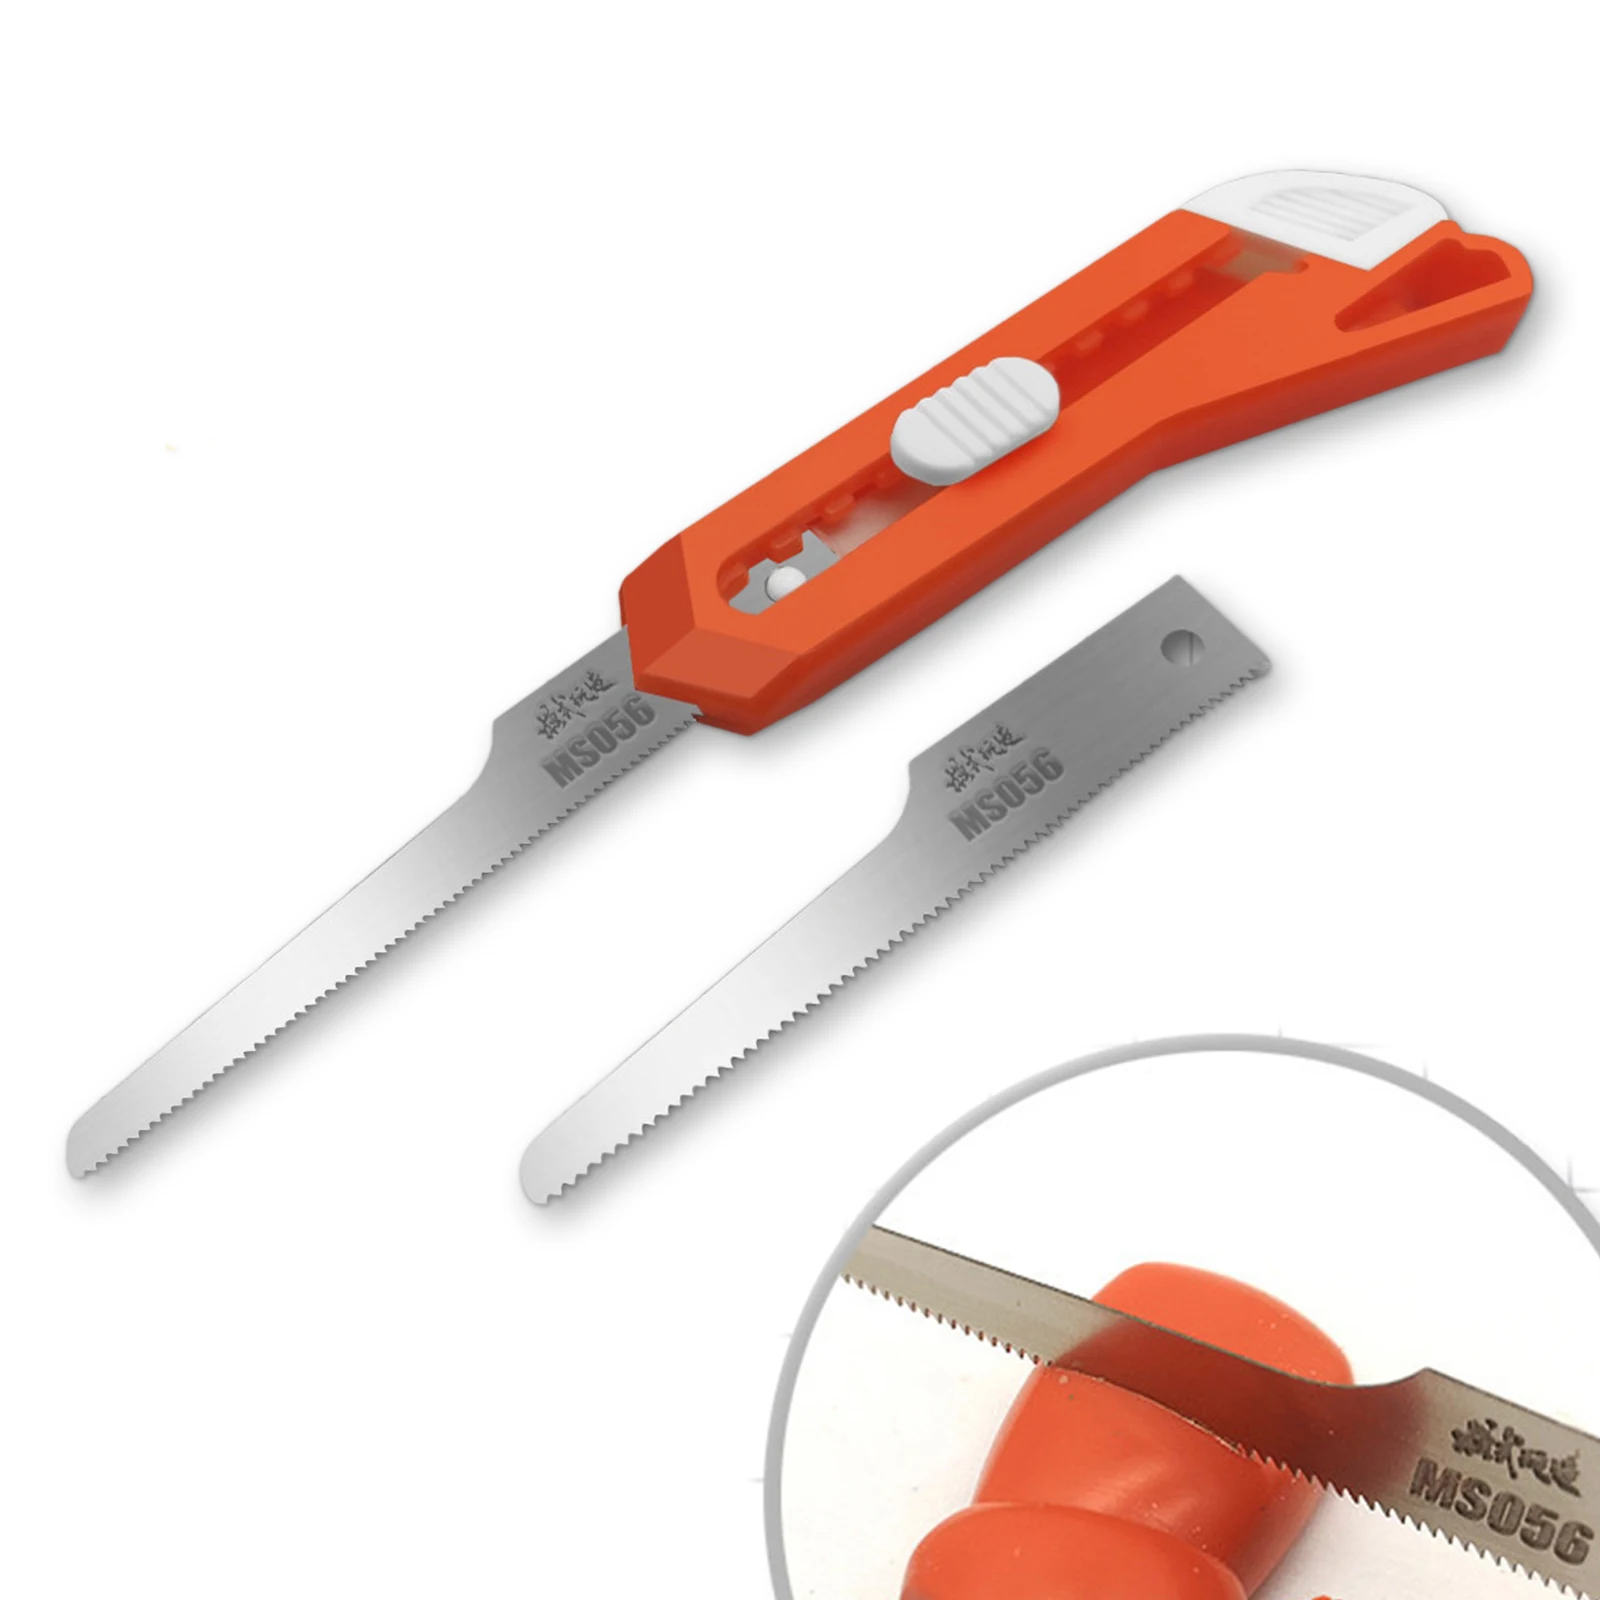 Handy Model Cutting Mini Hand Saw Knife Blades 2 in 1 DIY Craft Hacksaw Tool